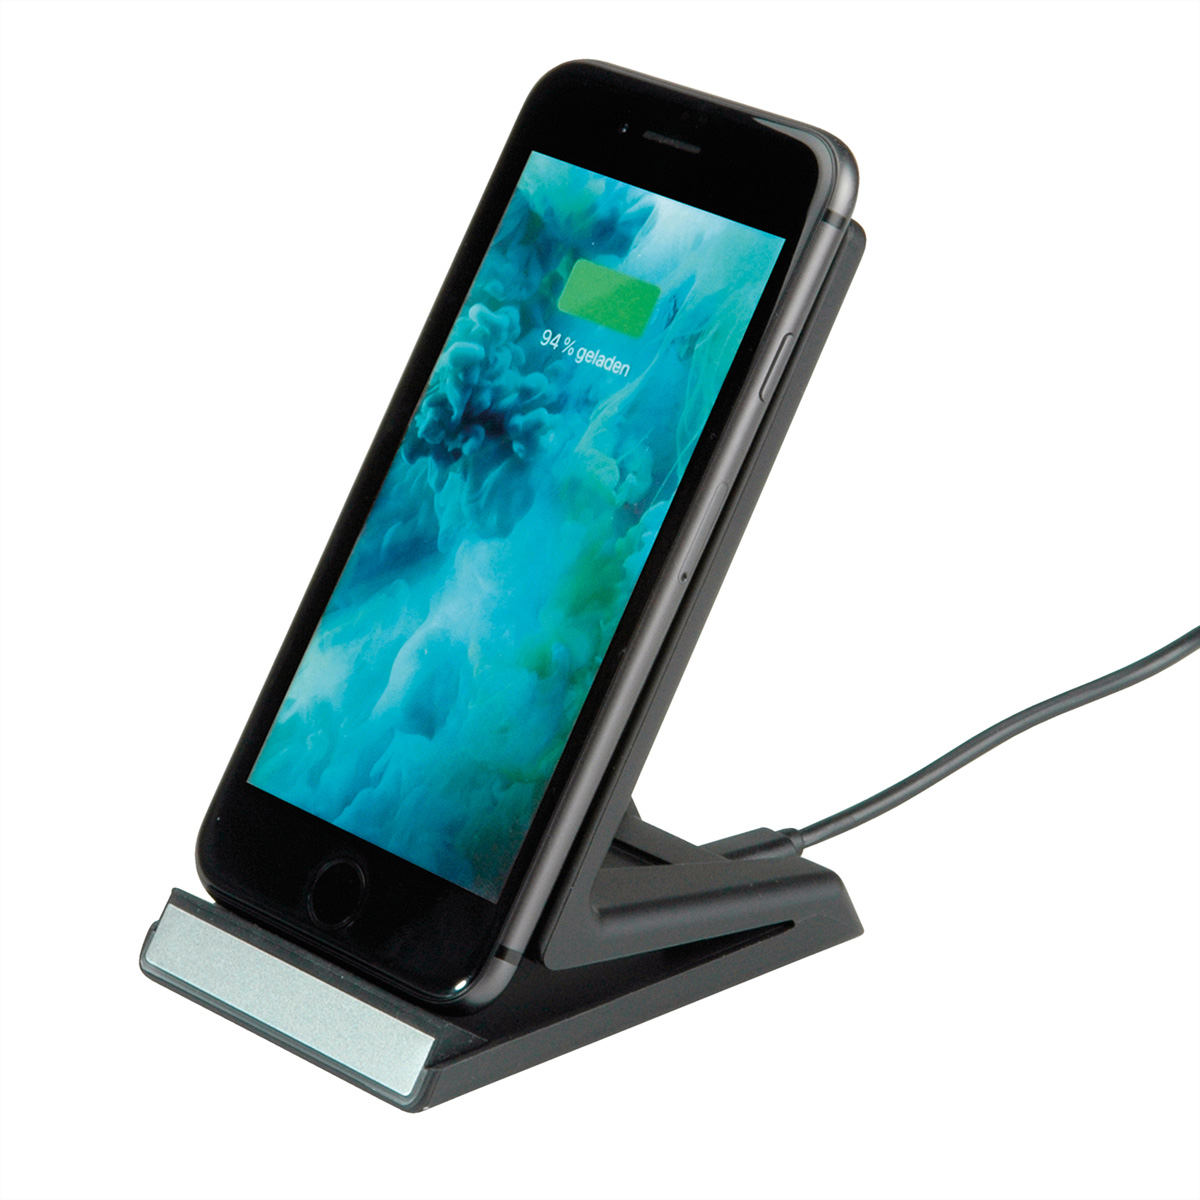 ROLINE Wireless Charging Ständer für Mobilgeräte, Ladestation 10W schwarz